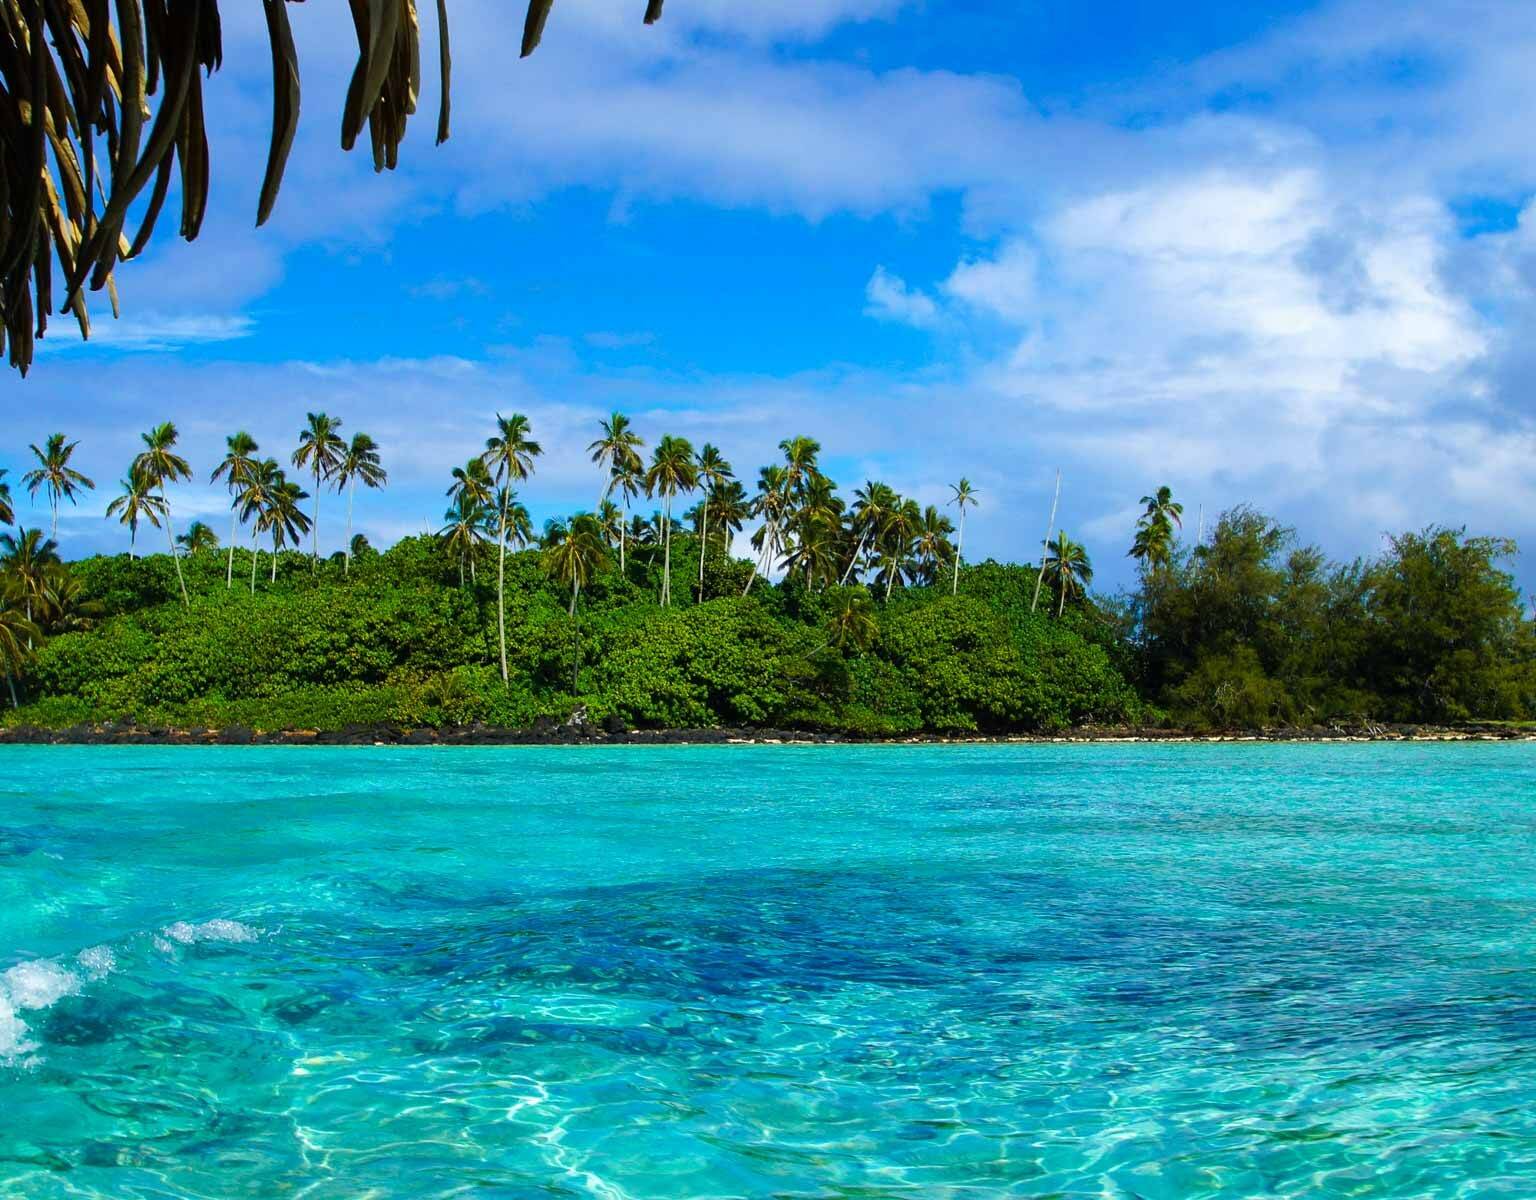 Unter dem Schatten einer Palme liegt der Blick auf glasklares Wasser und die bewachsene Lagune auf Rarotonga in der Südsee.